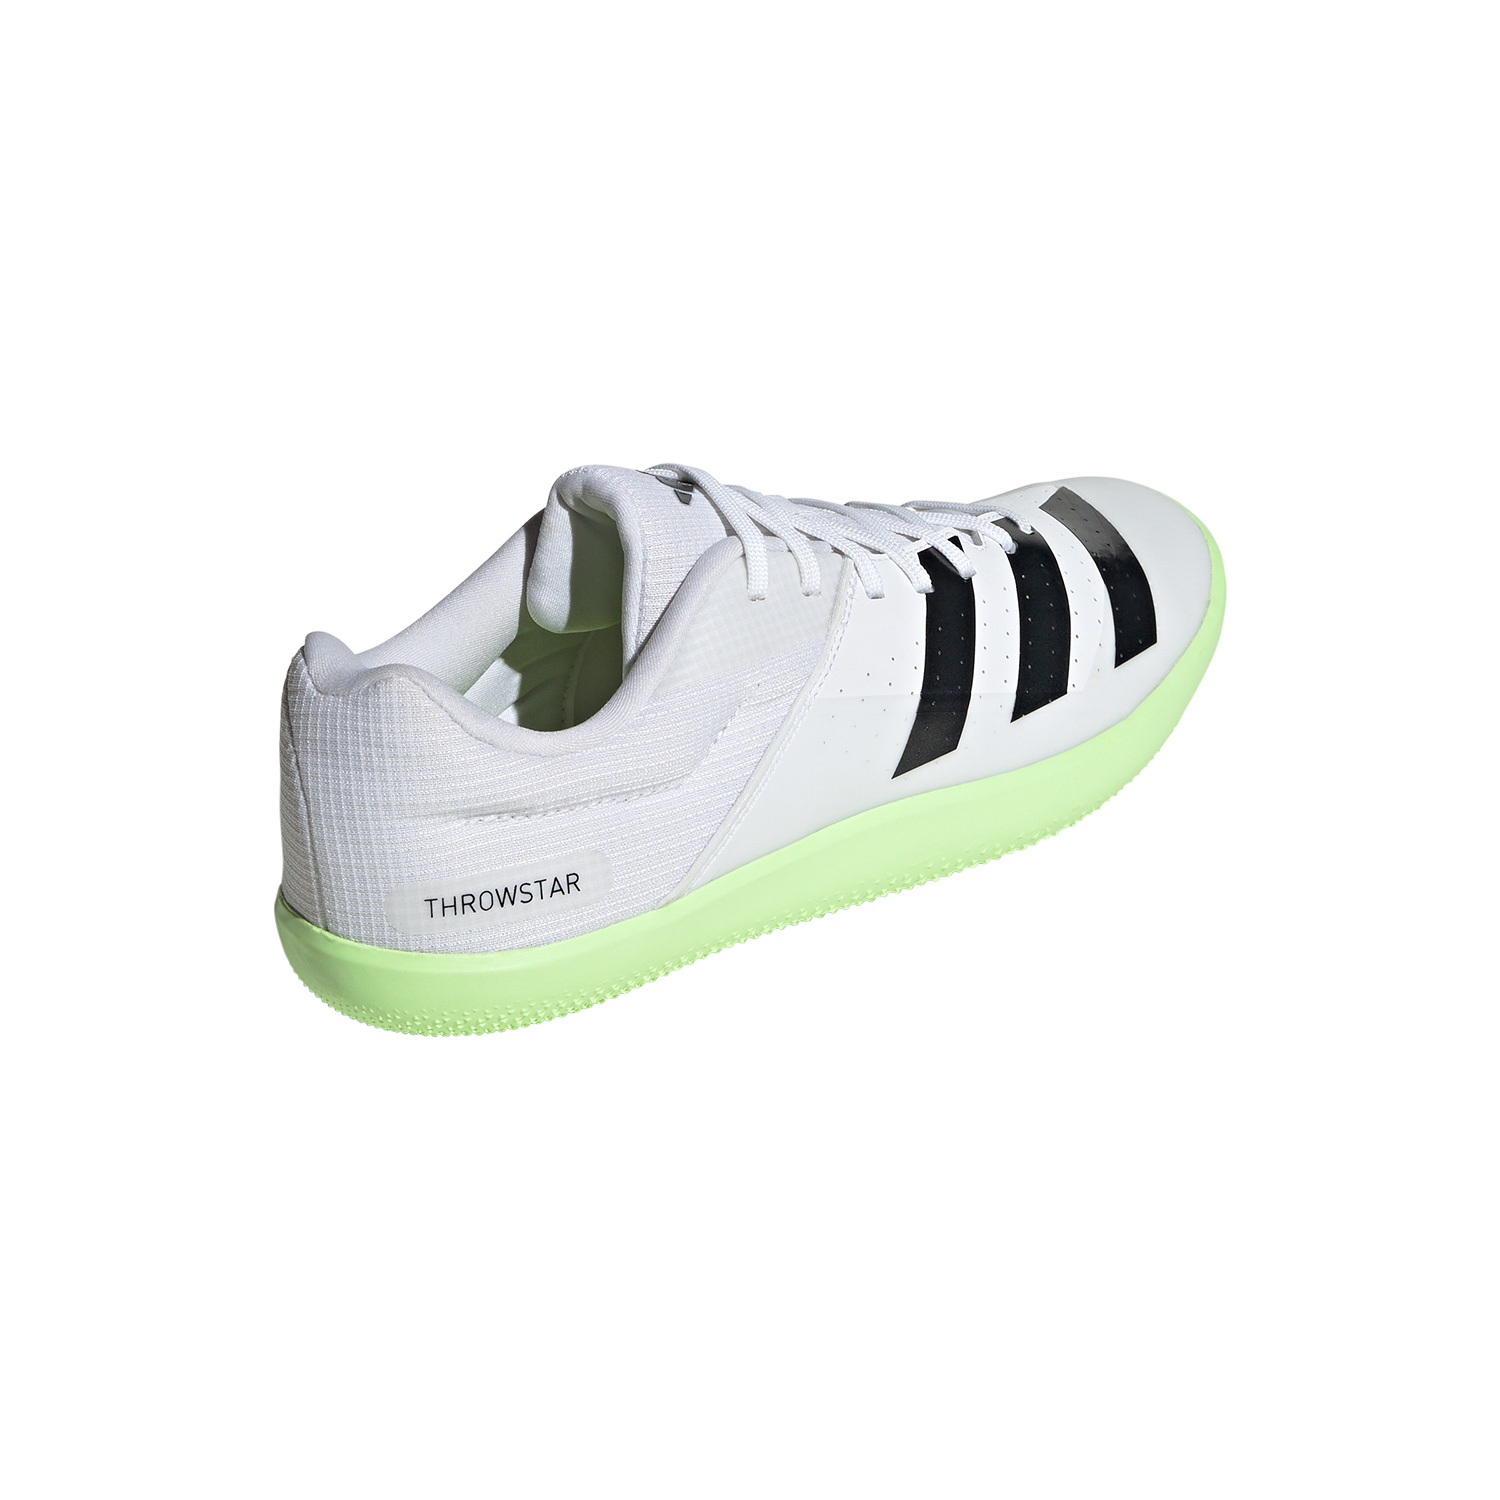 adidas Throwstar - Cloud White/Core Black/Green Spark